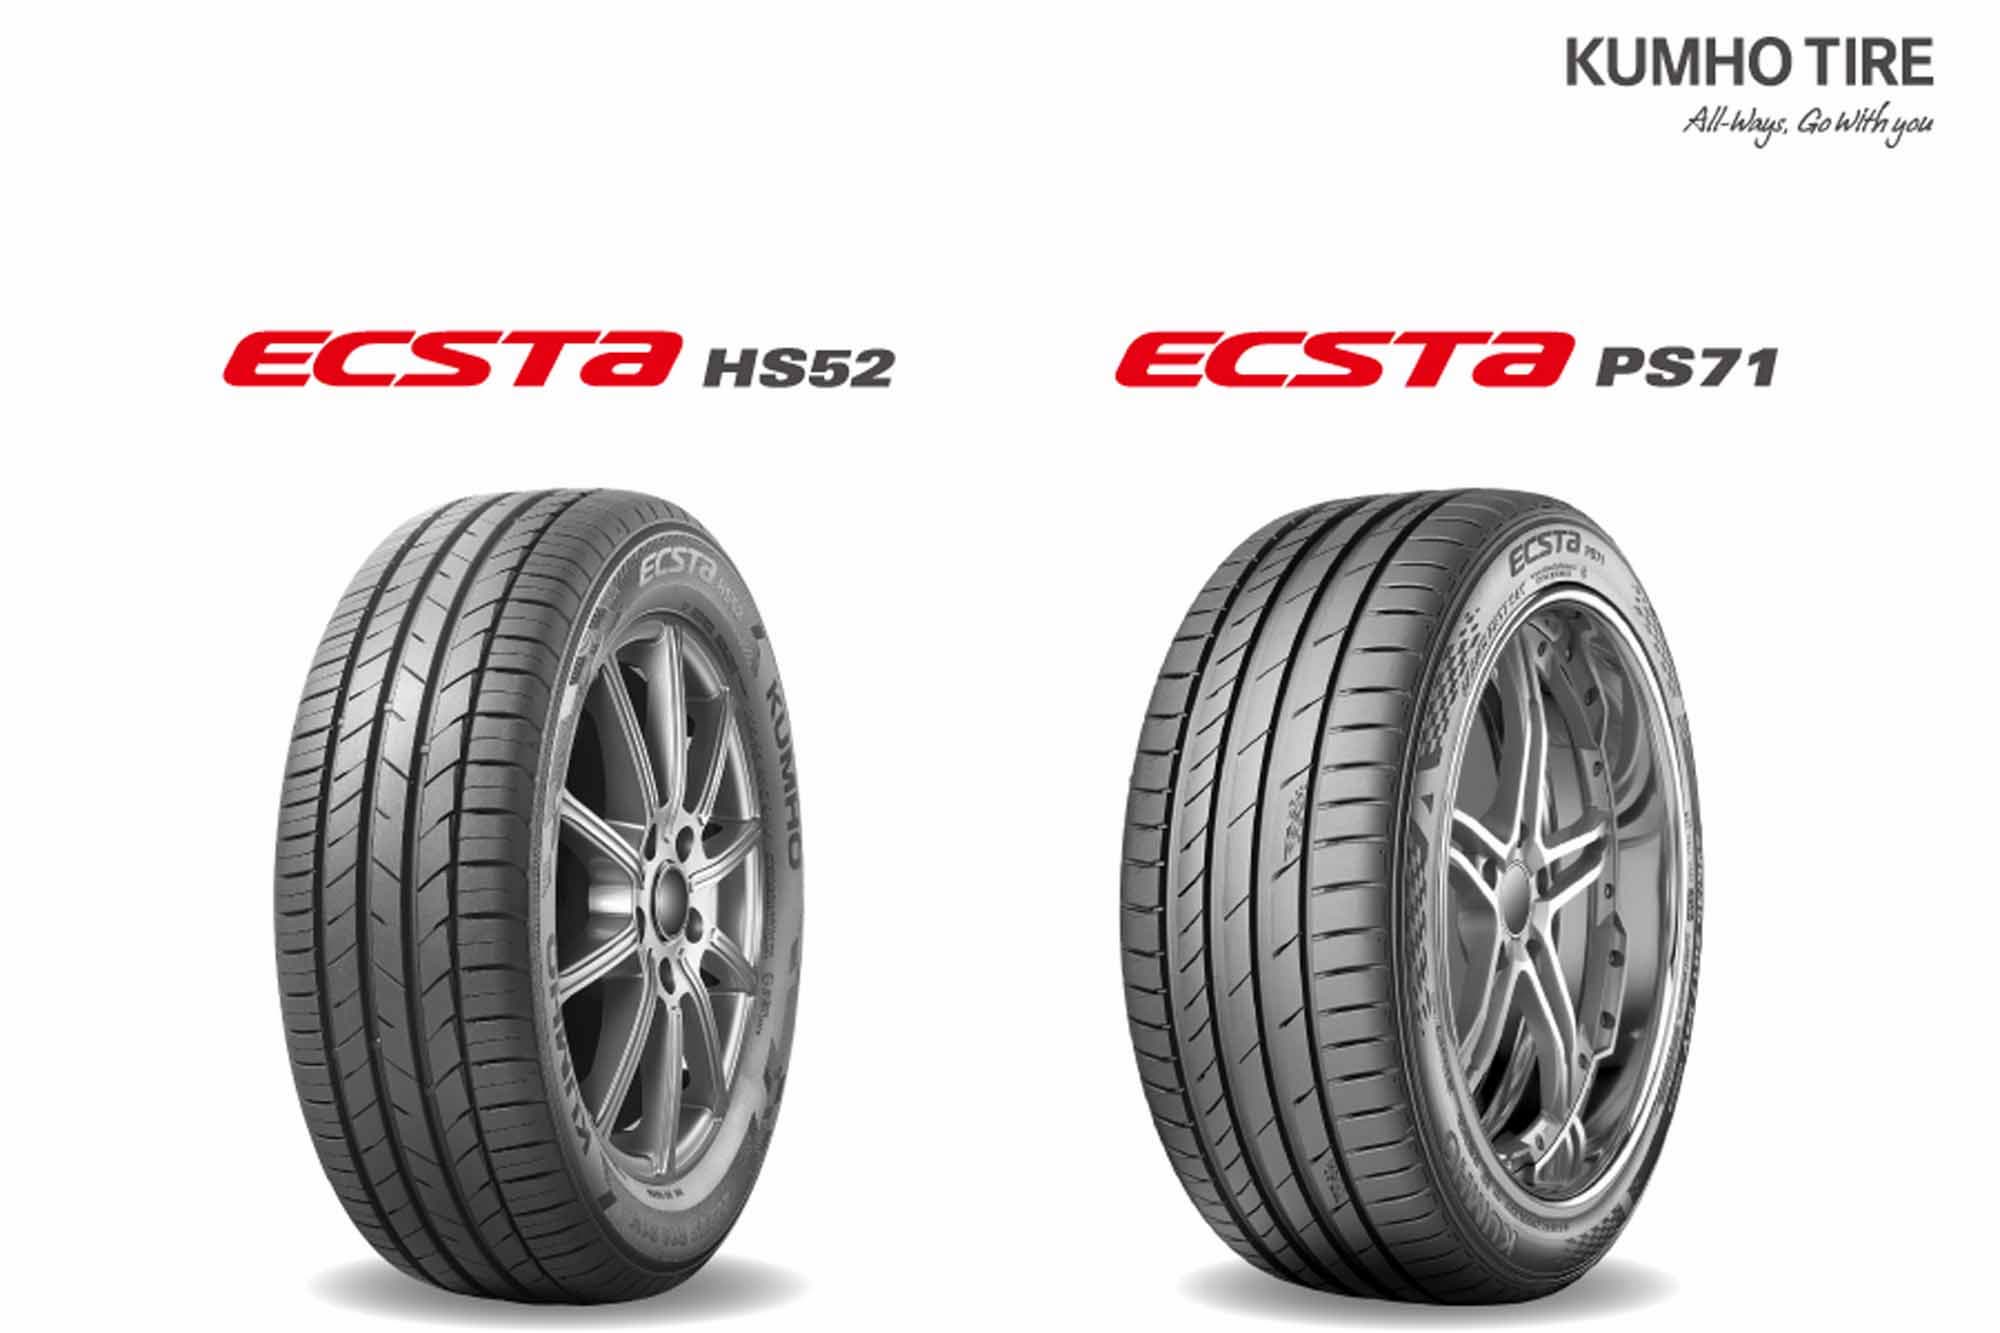 Los neumáticos de verano Kumho brillan en los nuevos test europeos